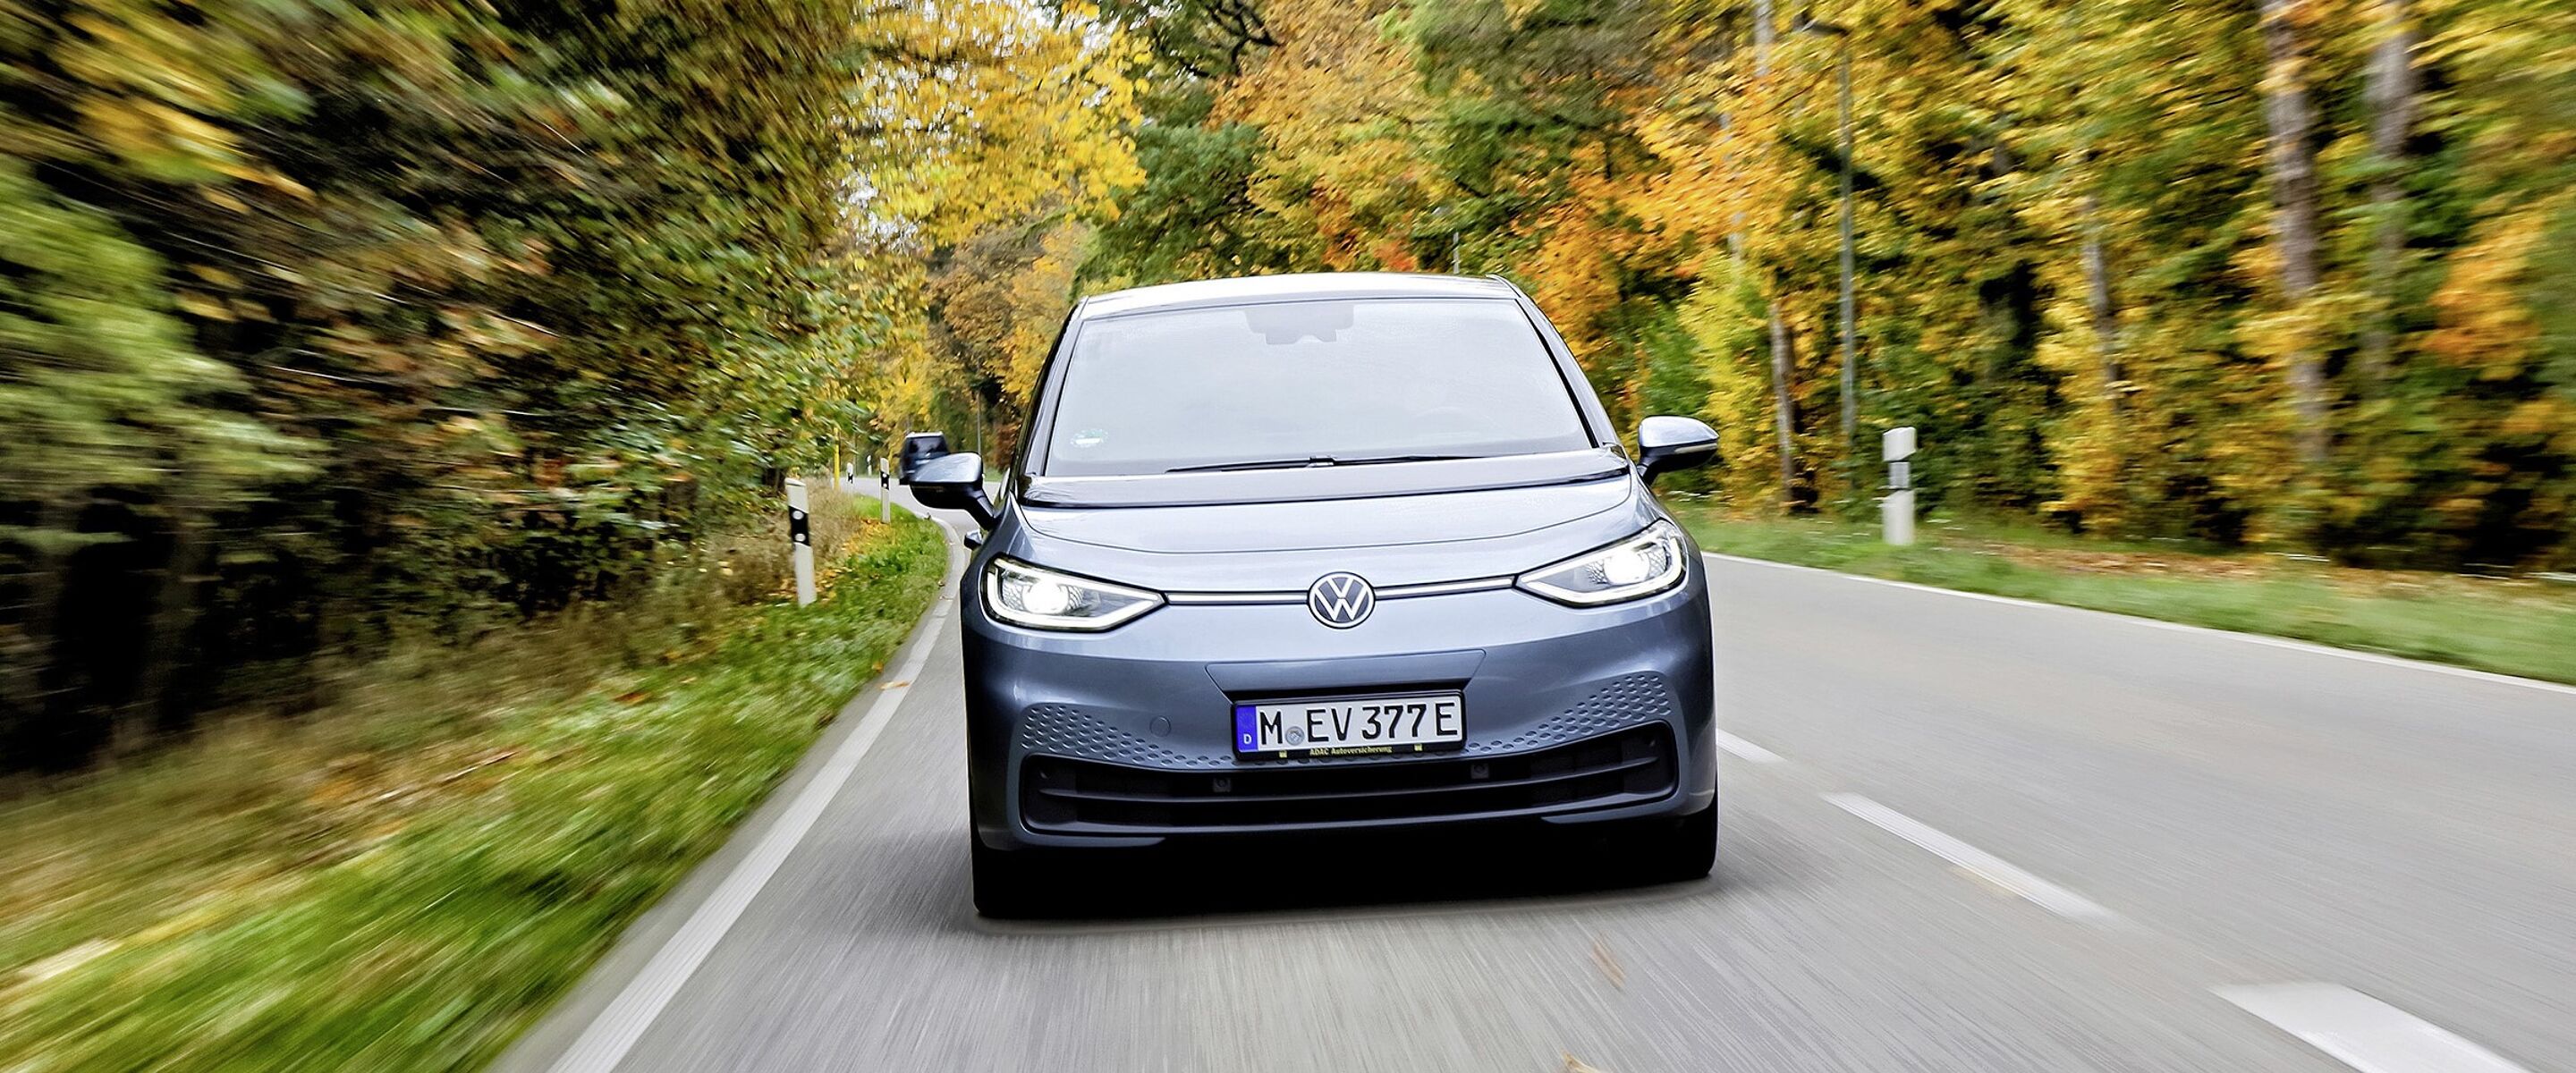 De 100.000 kilometer test met de Volkswagen ID.3 verloopt vlekkeloos